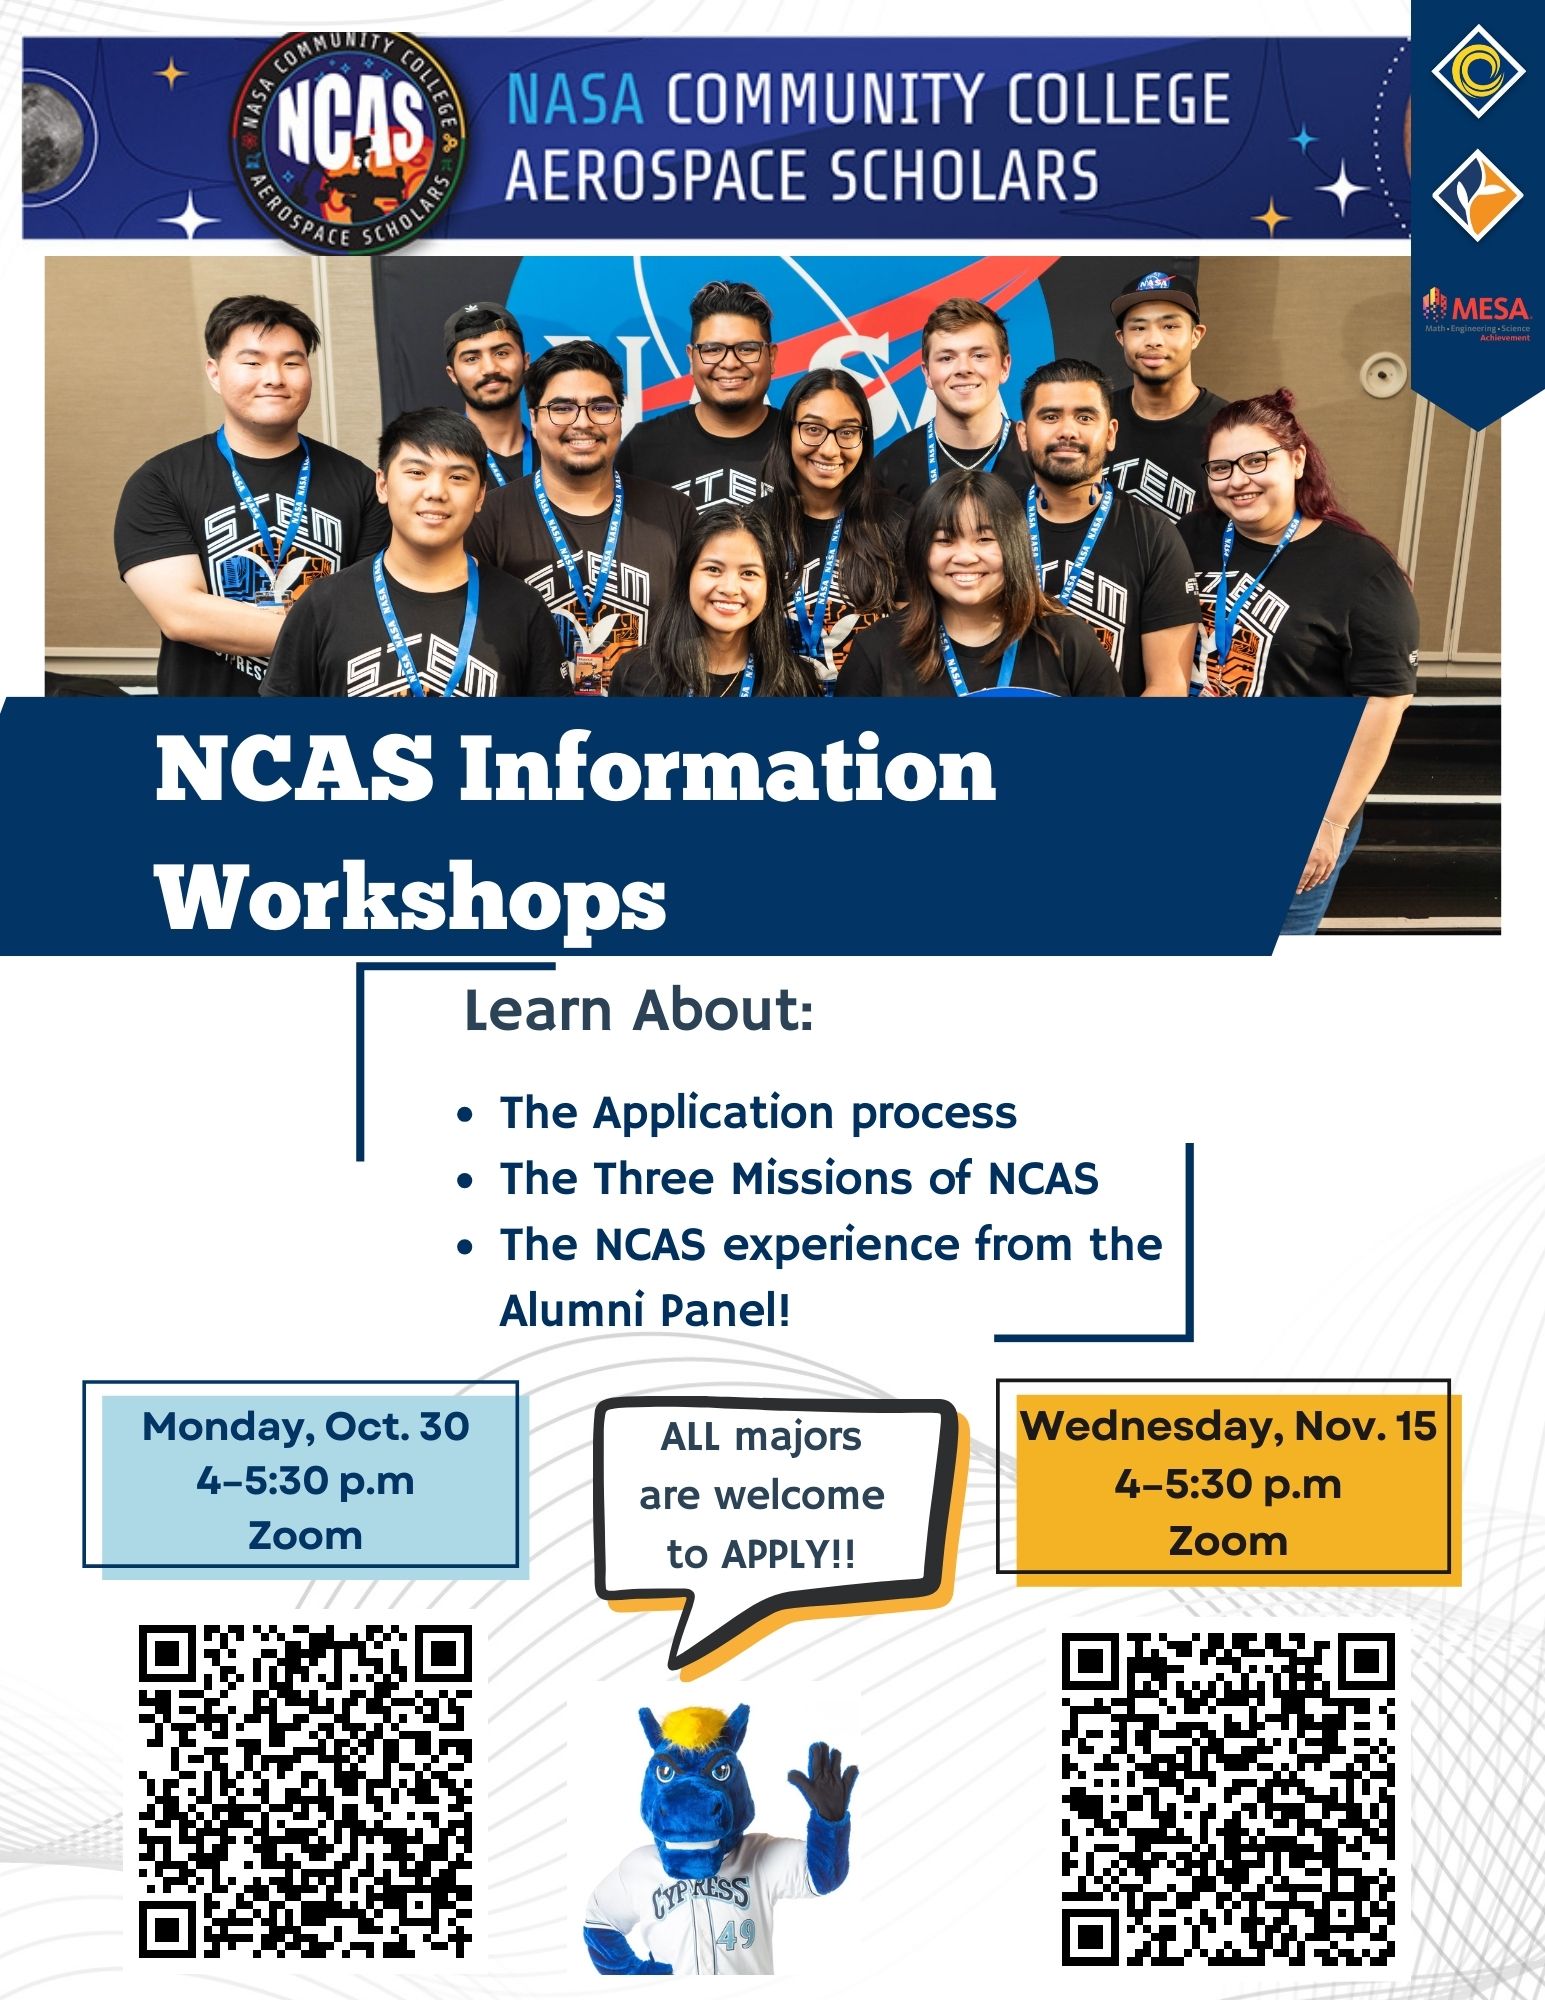 NCAS Information Workshops flyer